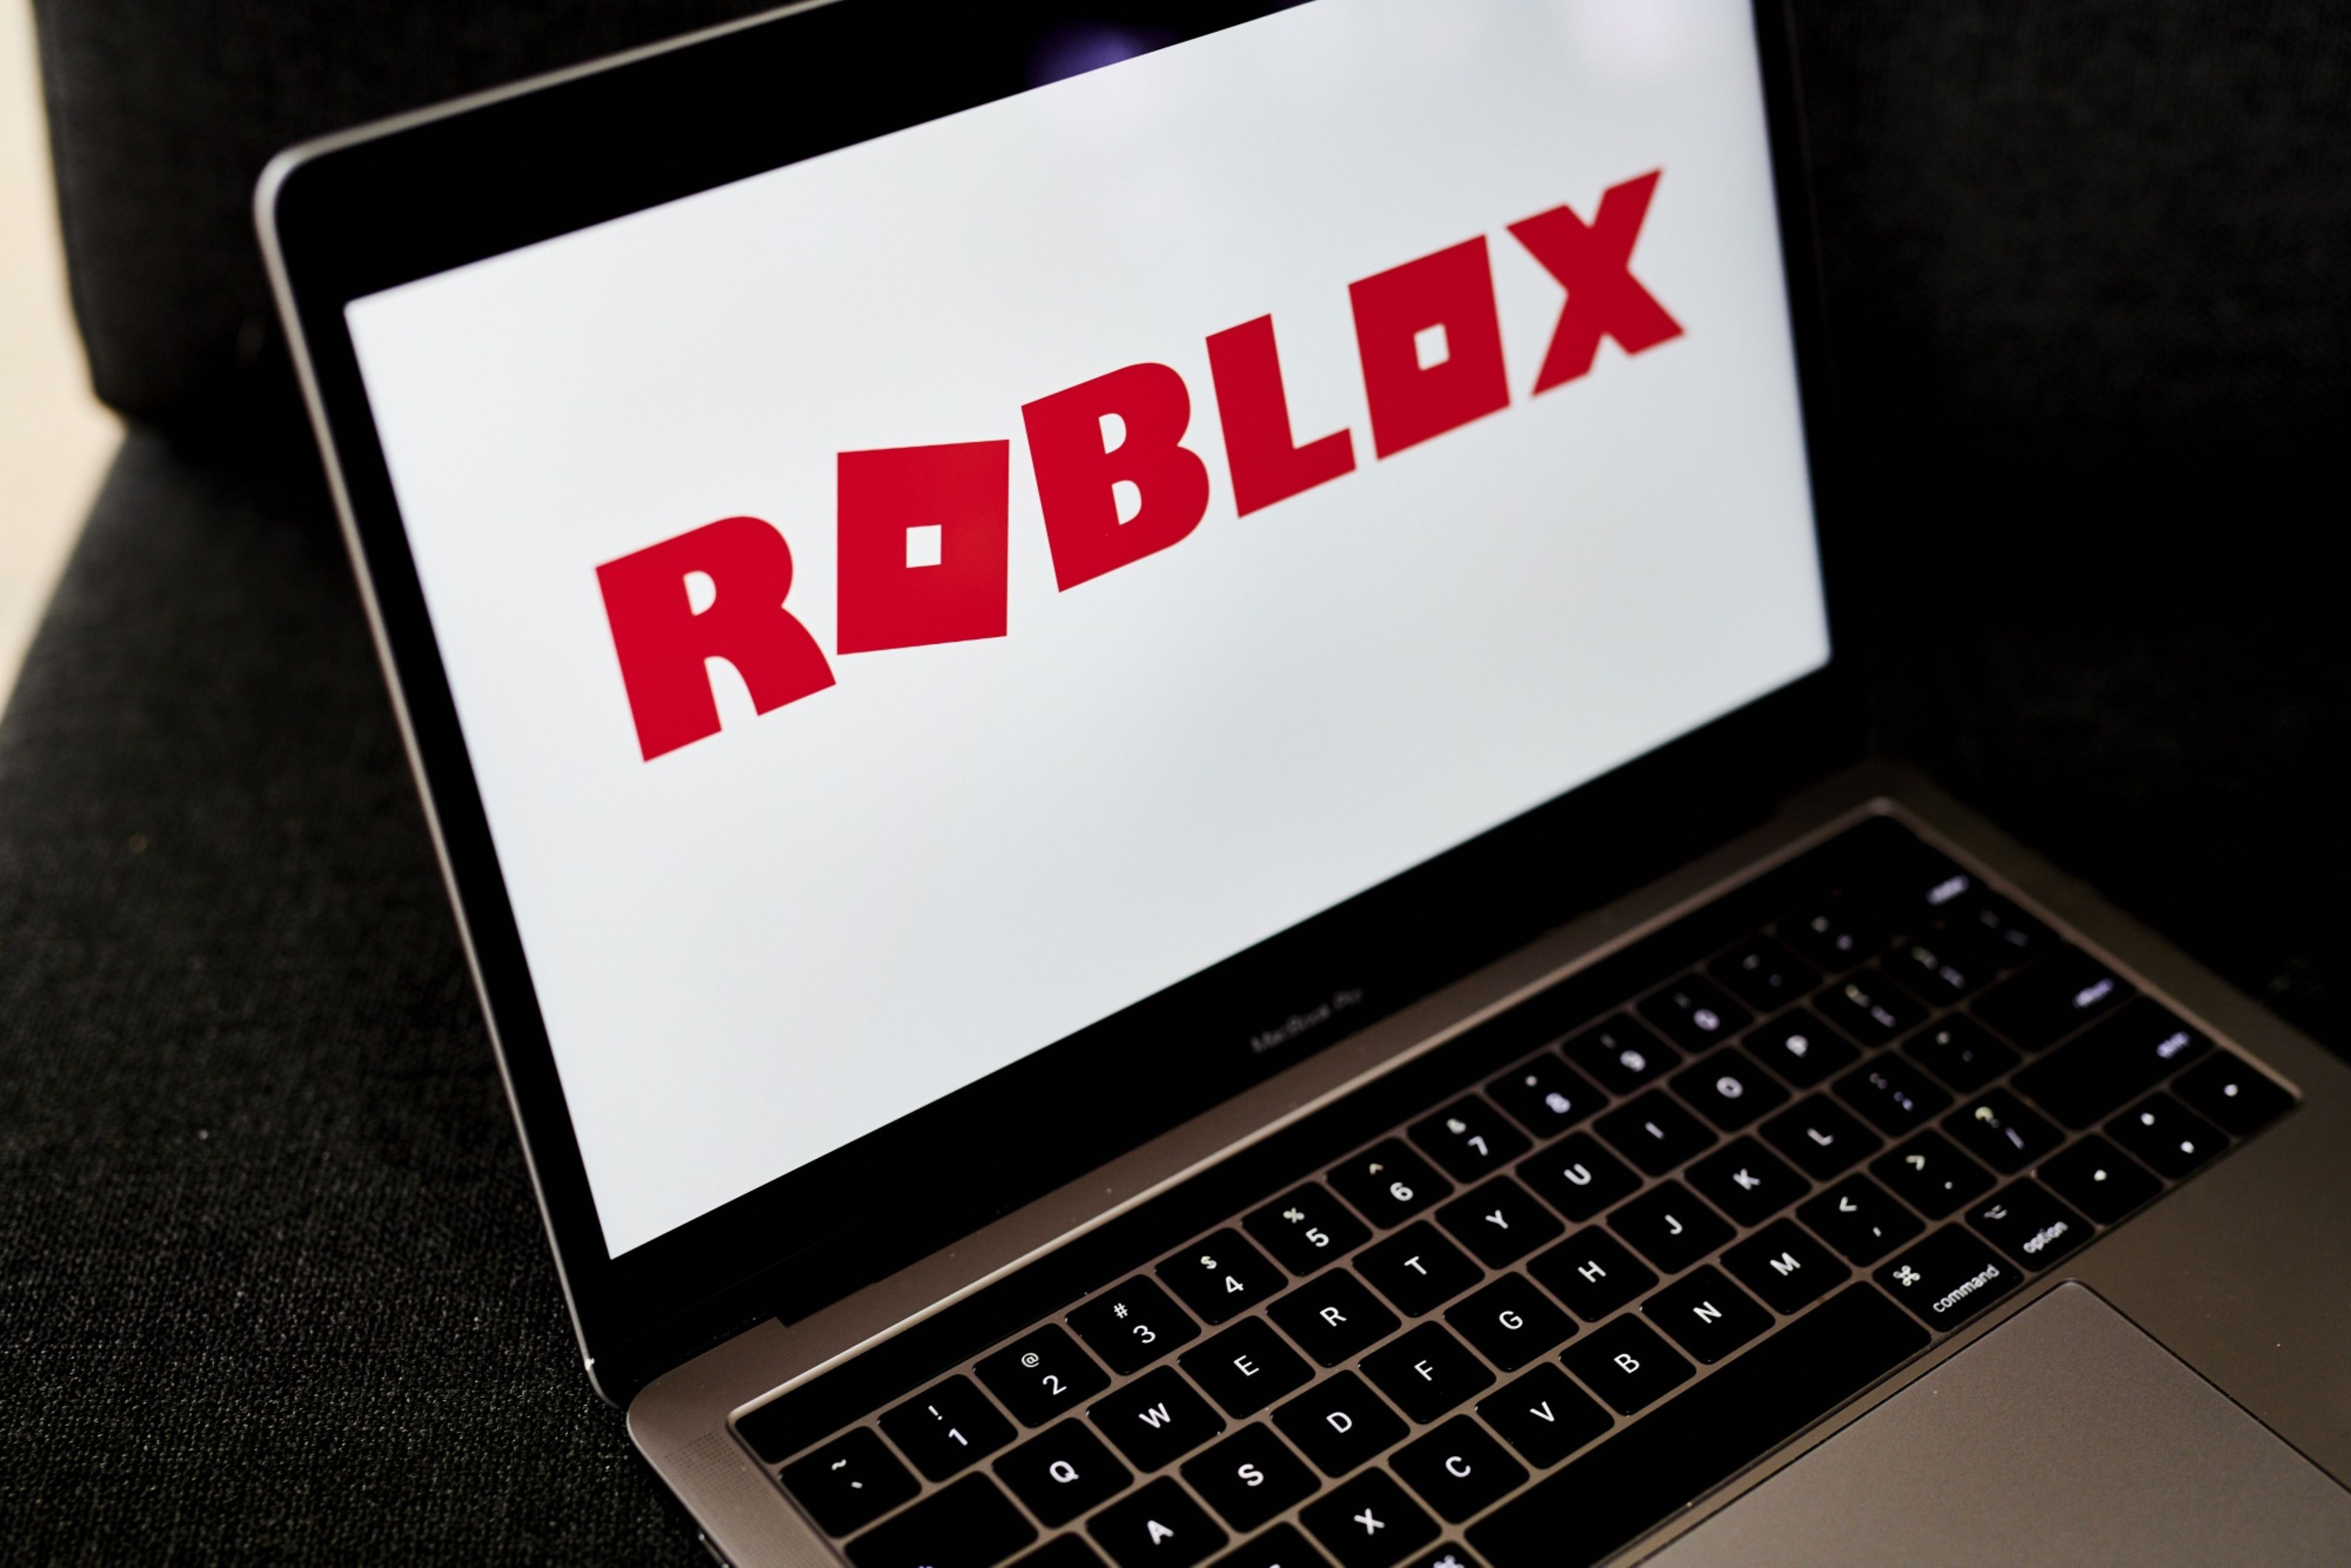 Roblox CEO David Baszucki says bookings are turning around